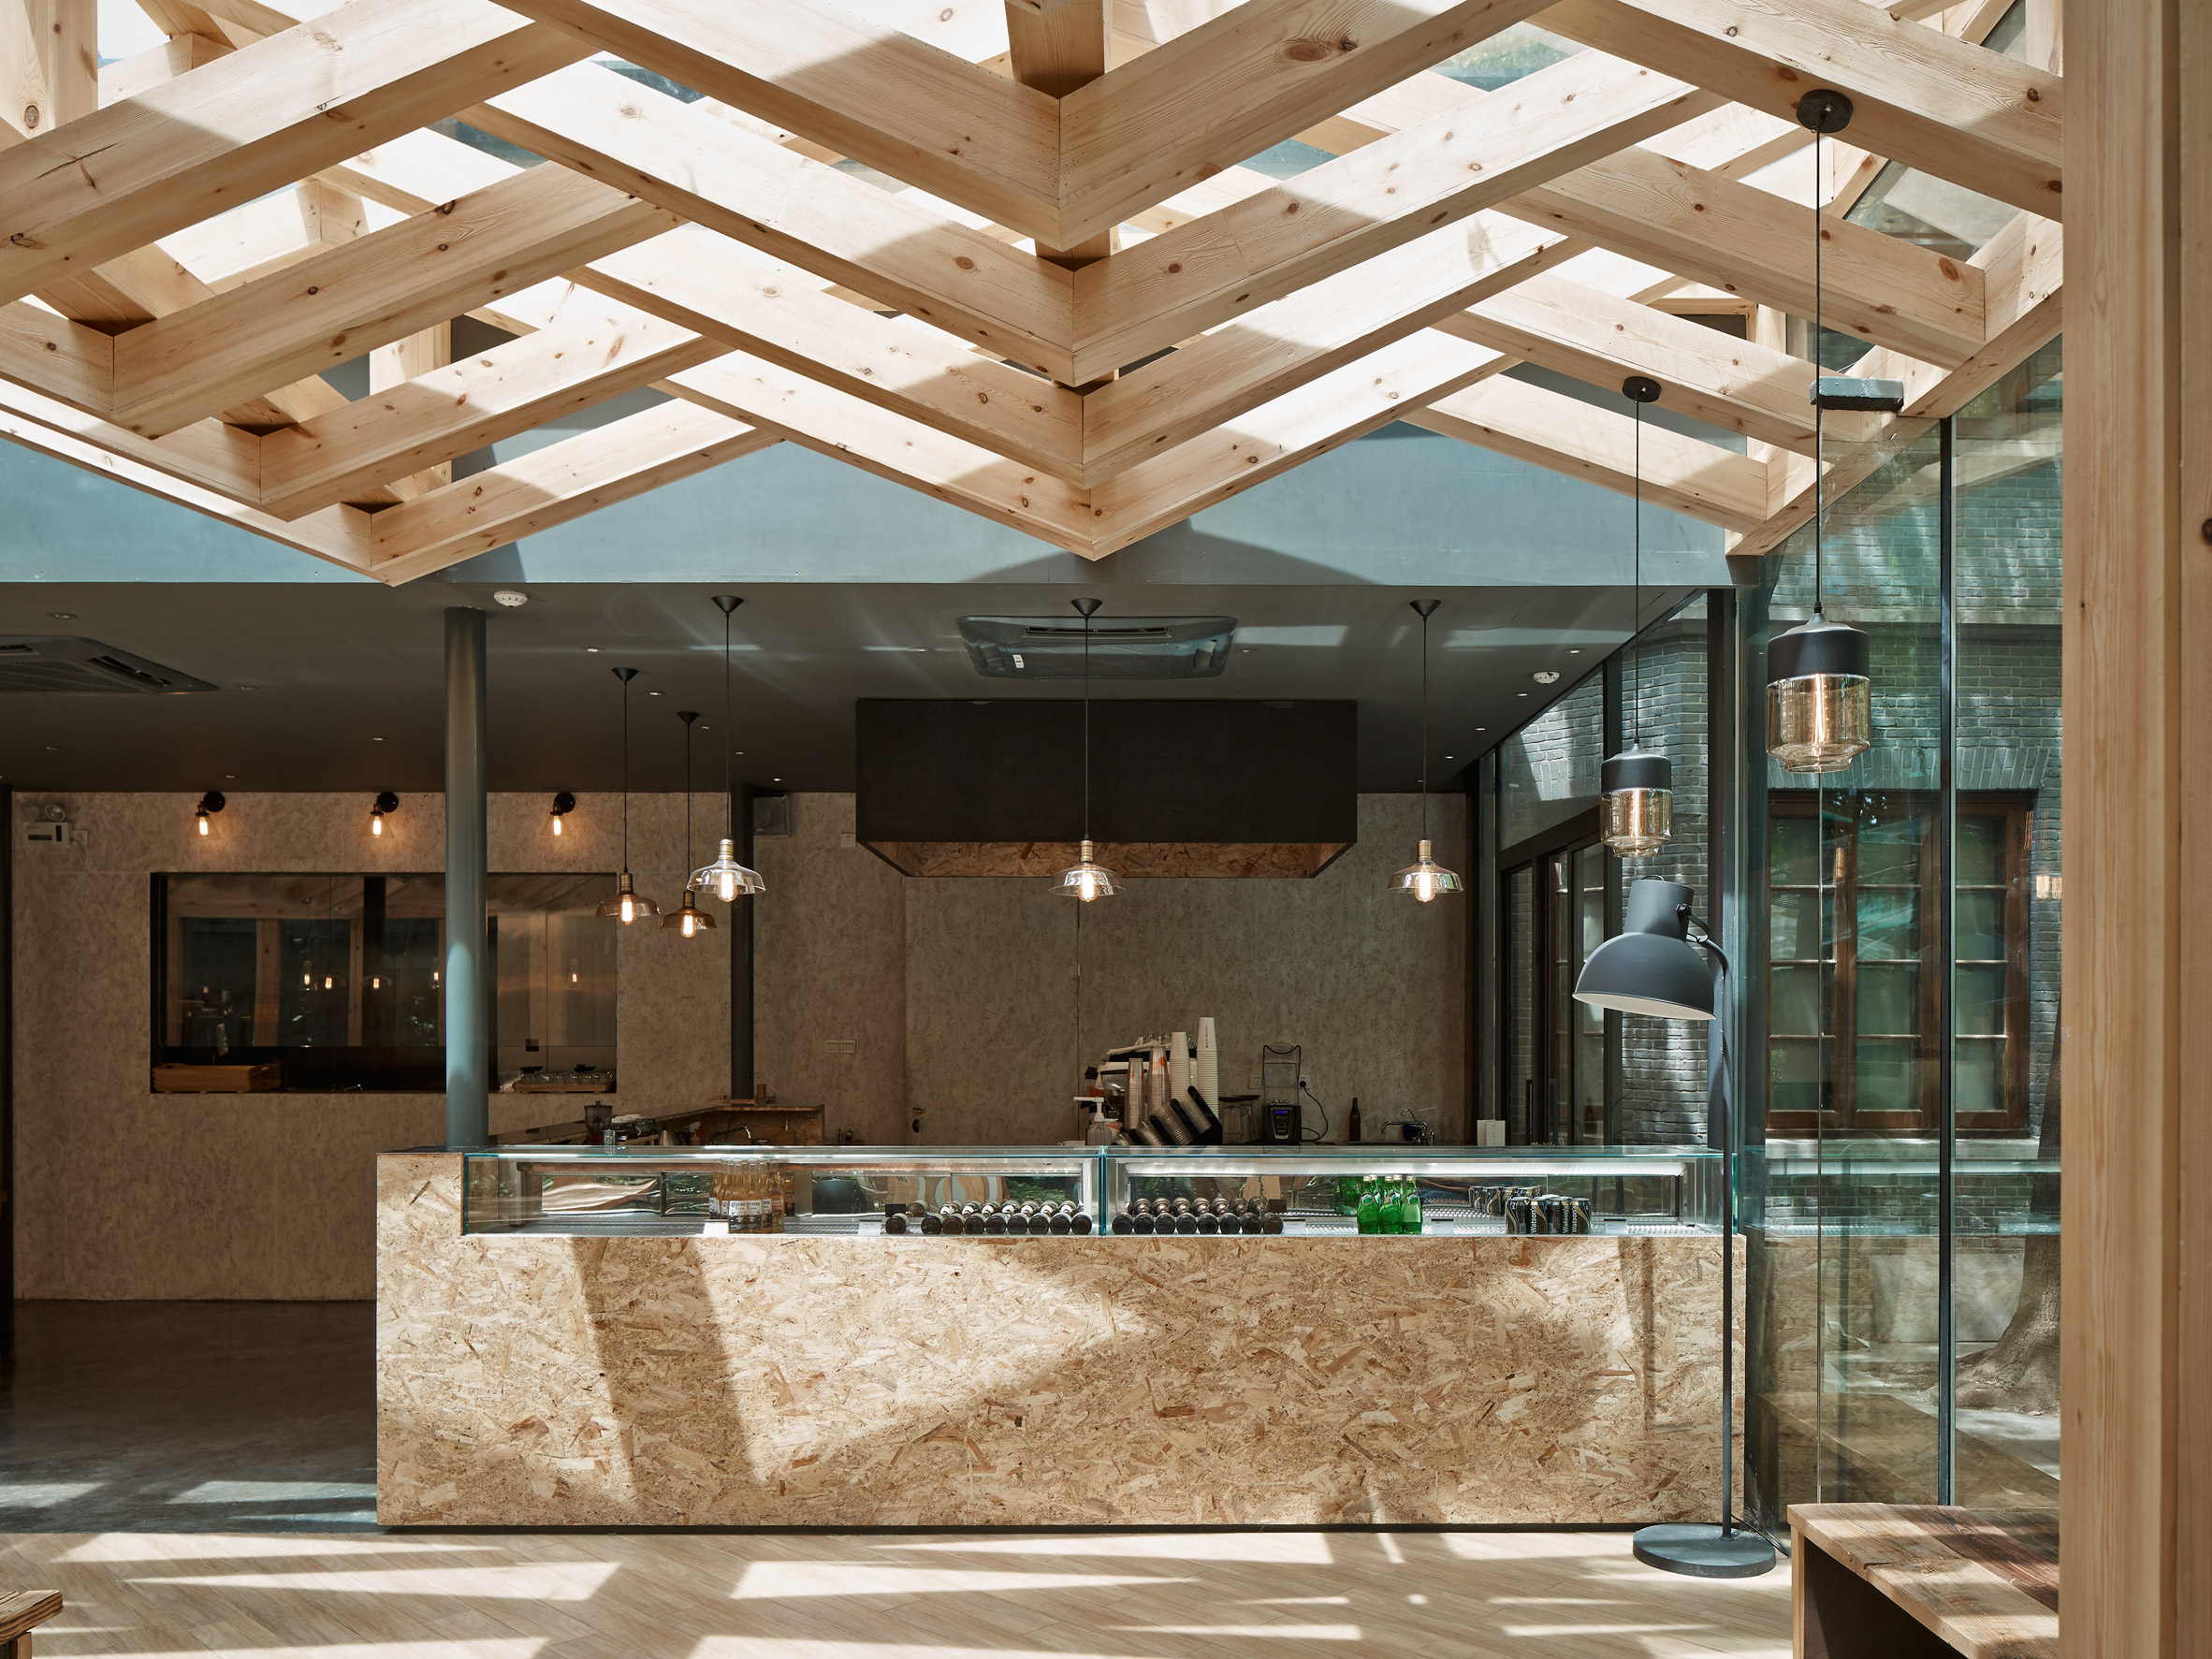 Xie Xie Cafe by Xooo Architects